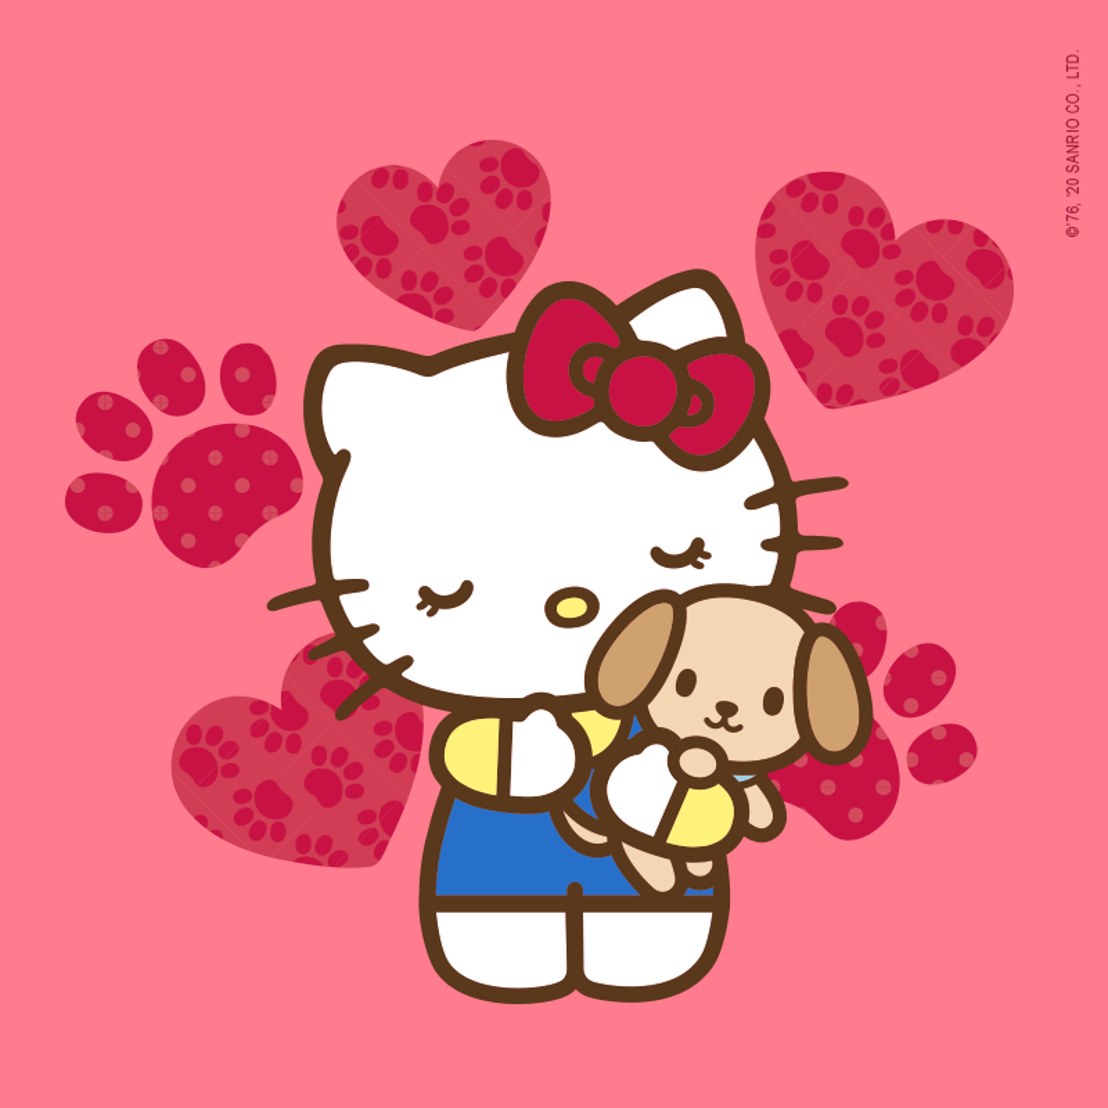 ¡Regala sonrisas con Hello Kitty!